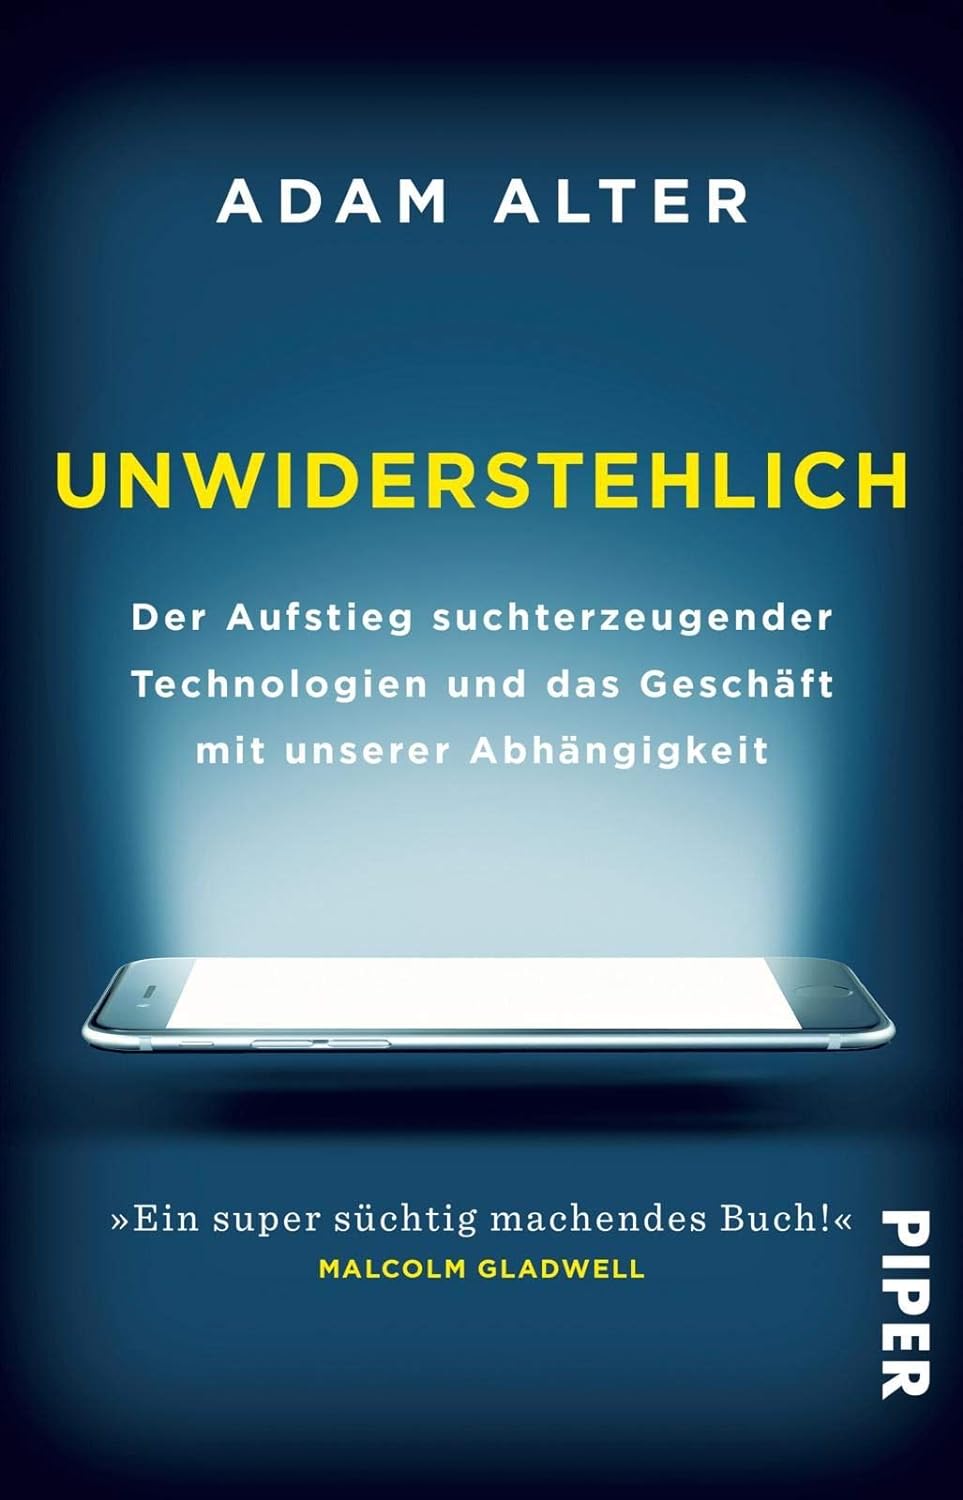 Adam Alter: Unwiderstehlich (Hardcover, deutsch language, 2018, Berlin Verlag)